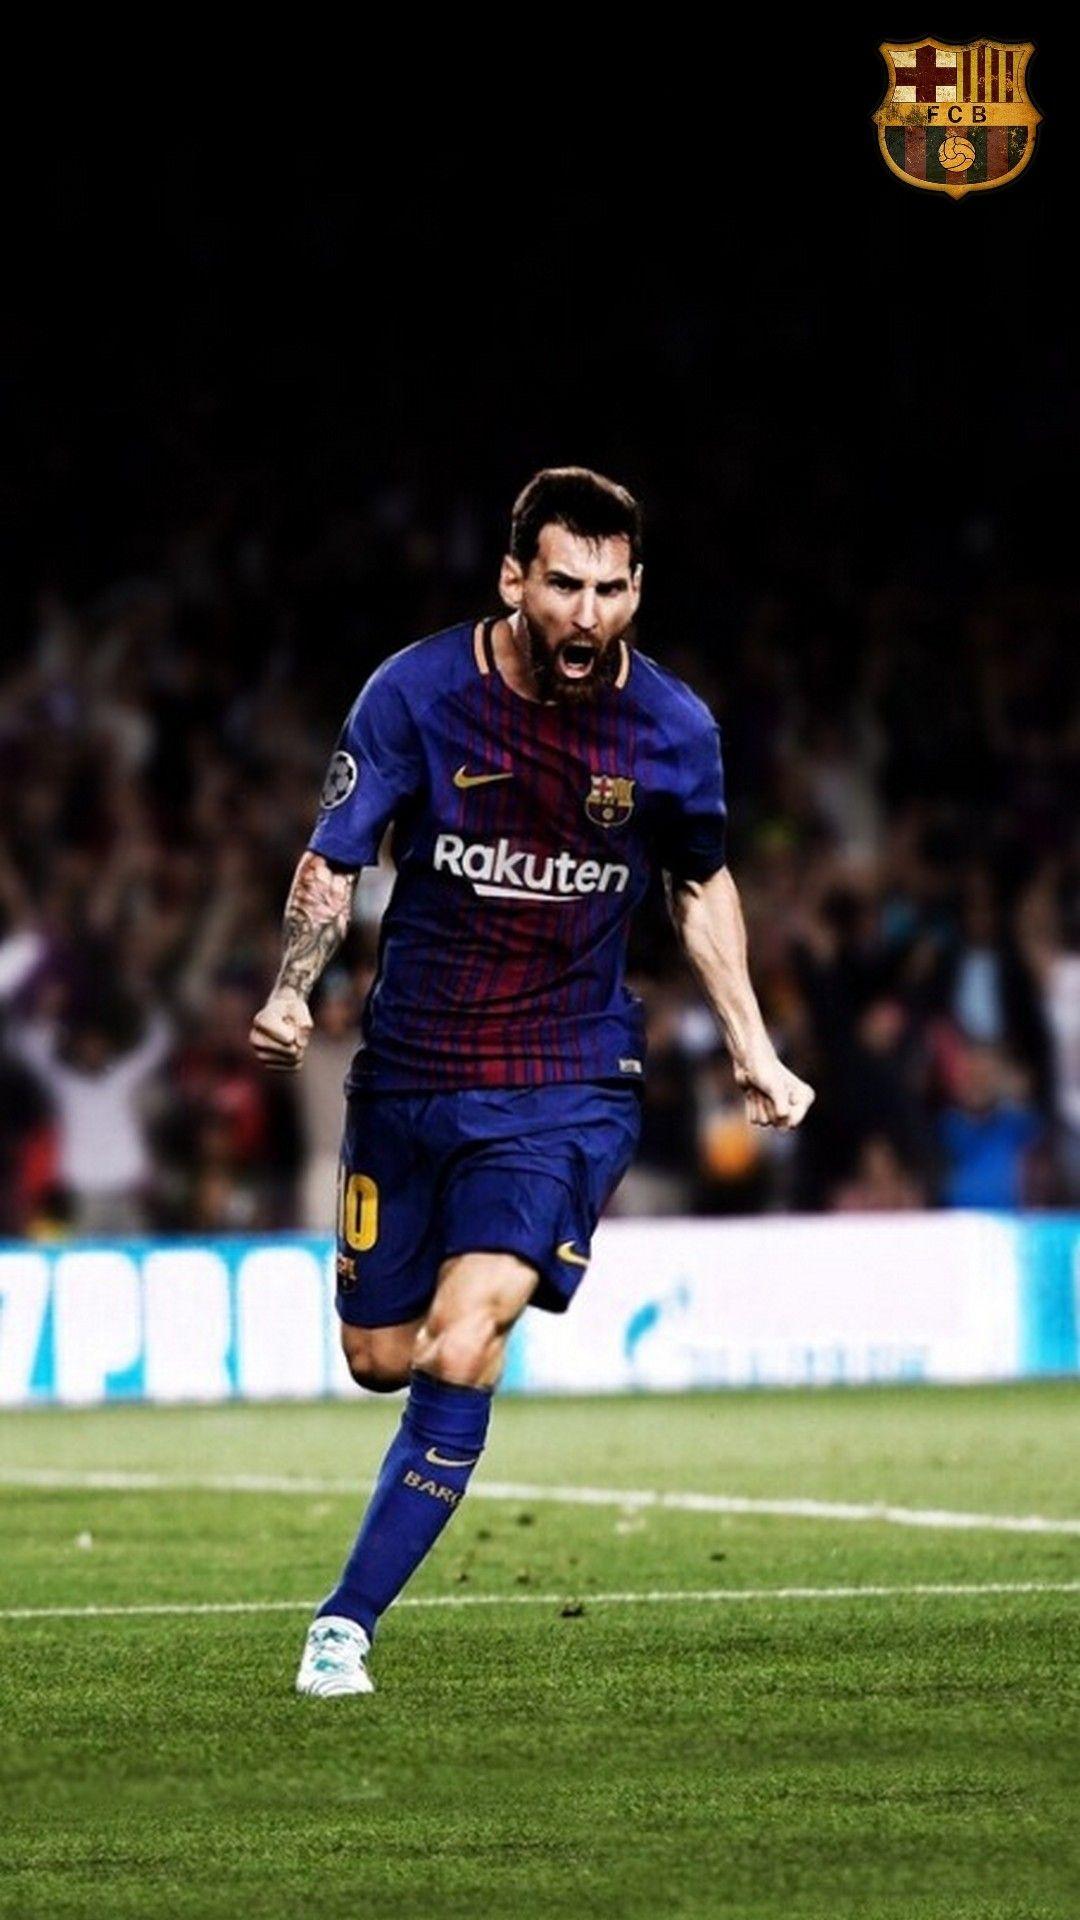 Messi Iphone Wallpapers - Top Những Hình Ảnh Đẹp